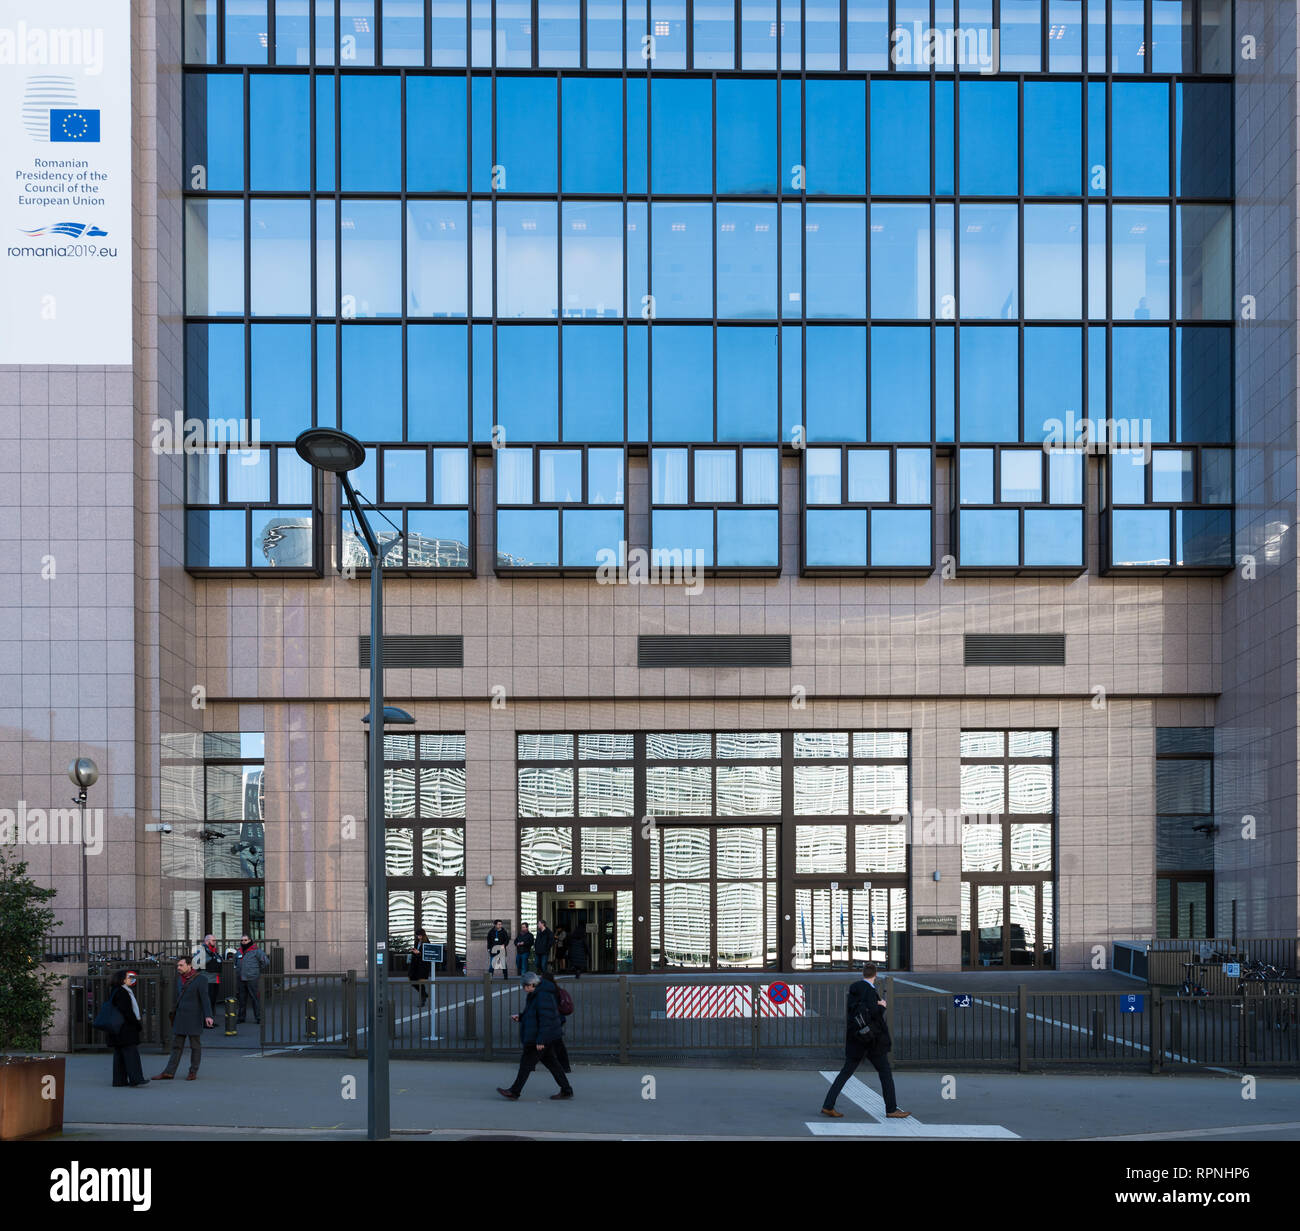 Stadt Brüssel/Belgien - 02 15 2019 - Fassade des Hauses Europa, annuncing der rumänischen Präsidentschaft des Rates der Europäischen Union. Stockfoto